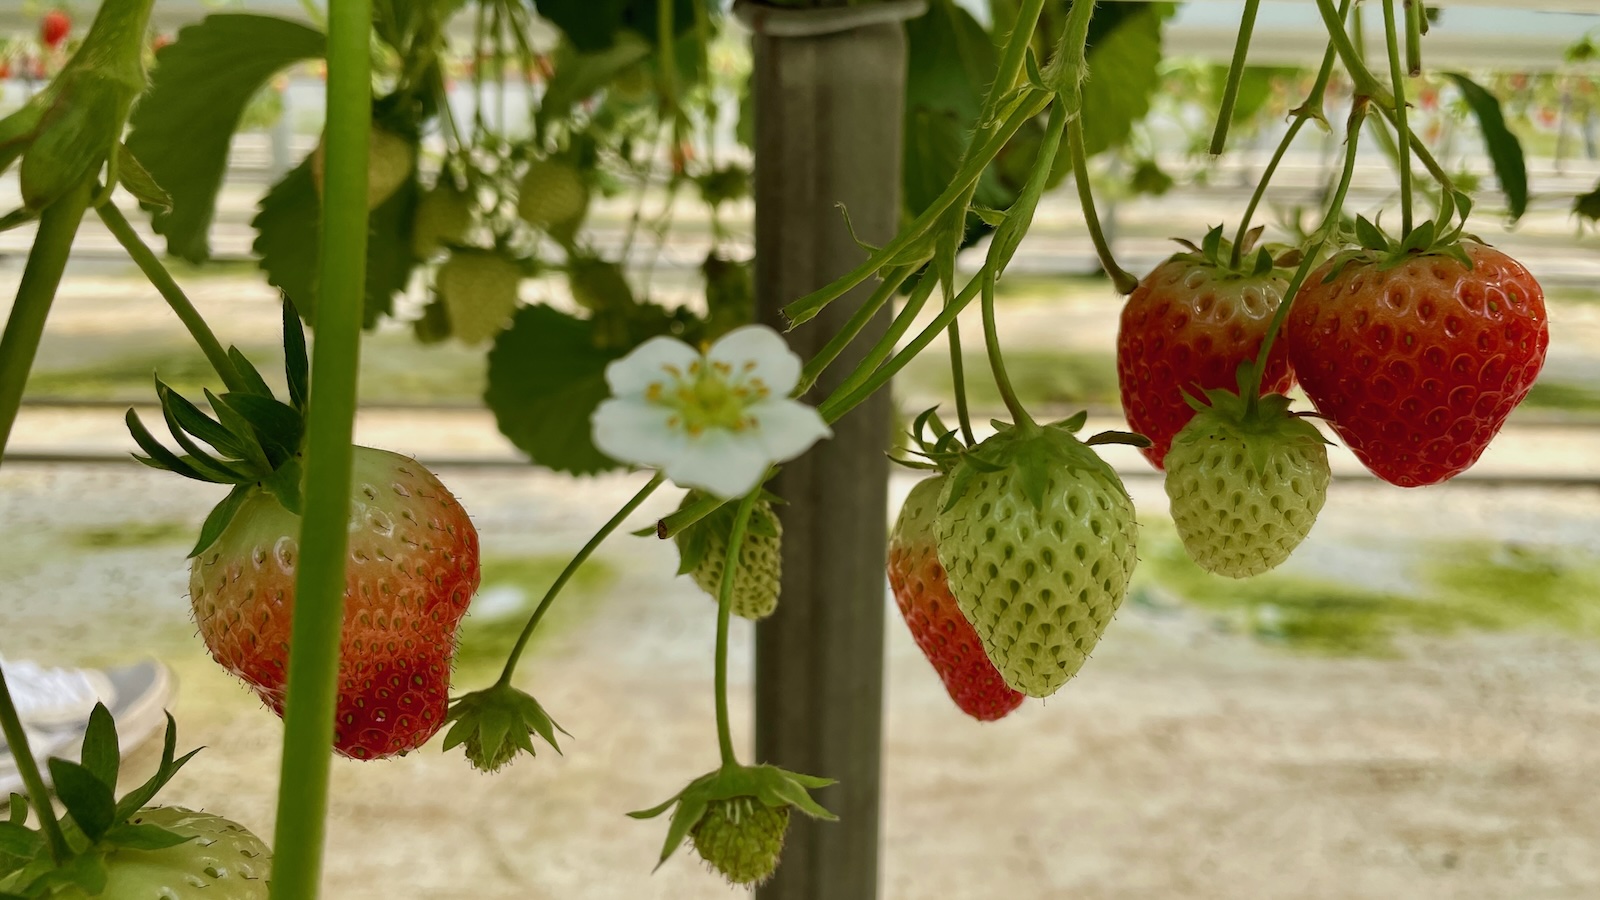 뜰농장 딸기체험농장 방문 후기